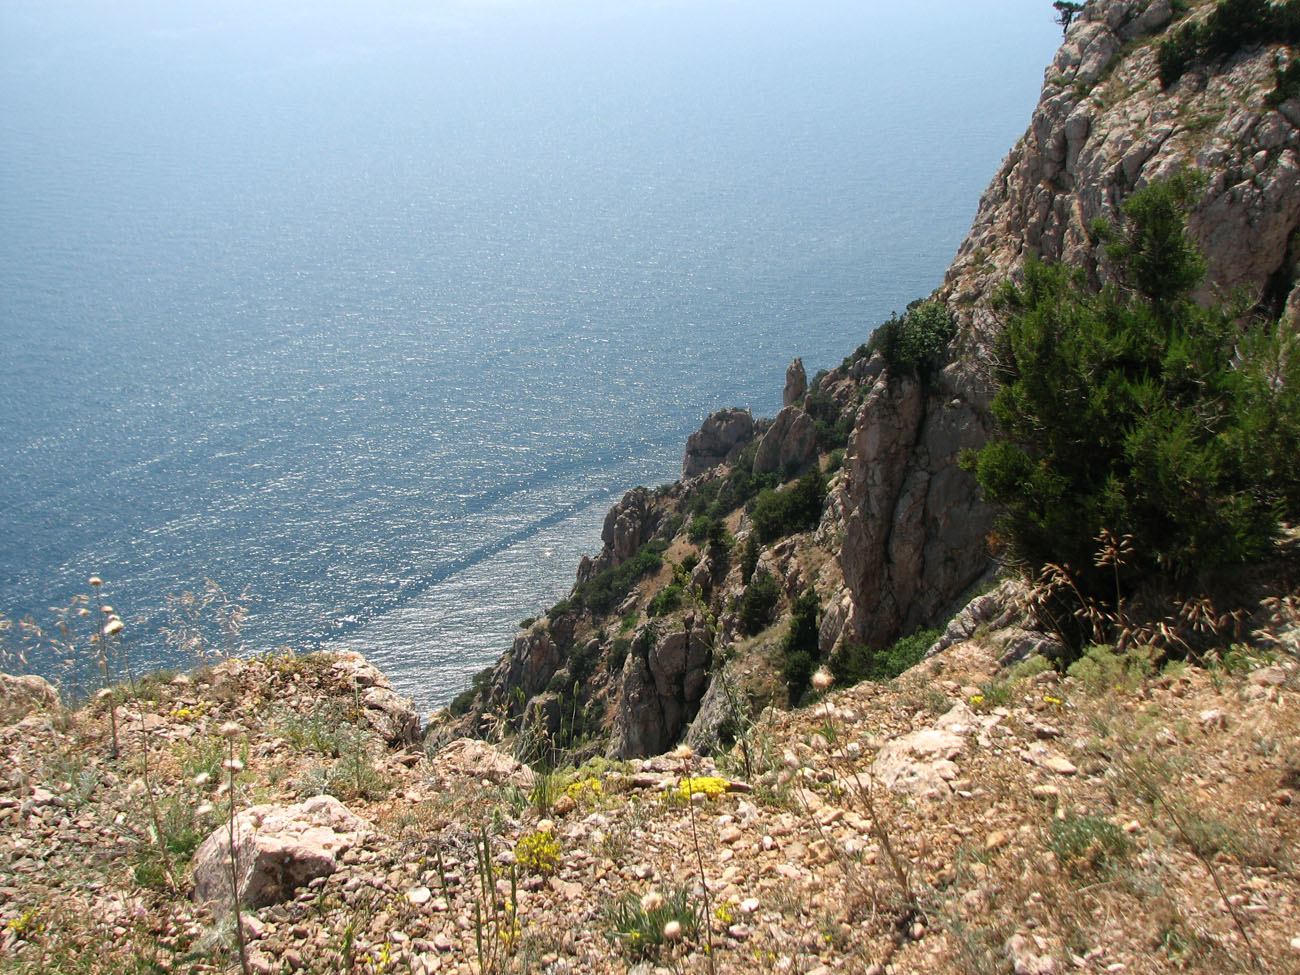 Караньское плато, image of landscape/habitat.